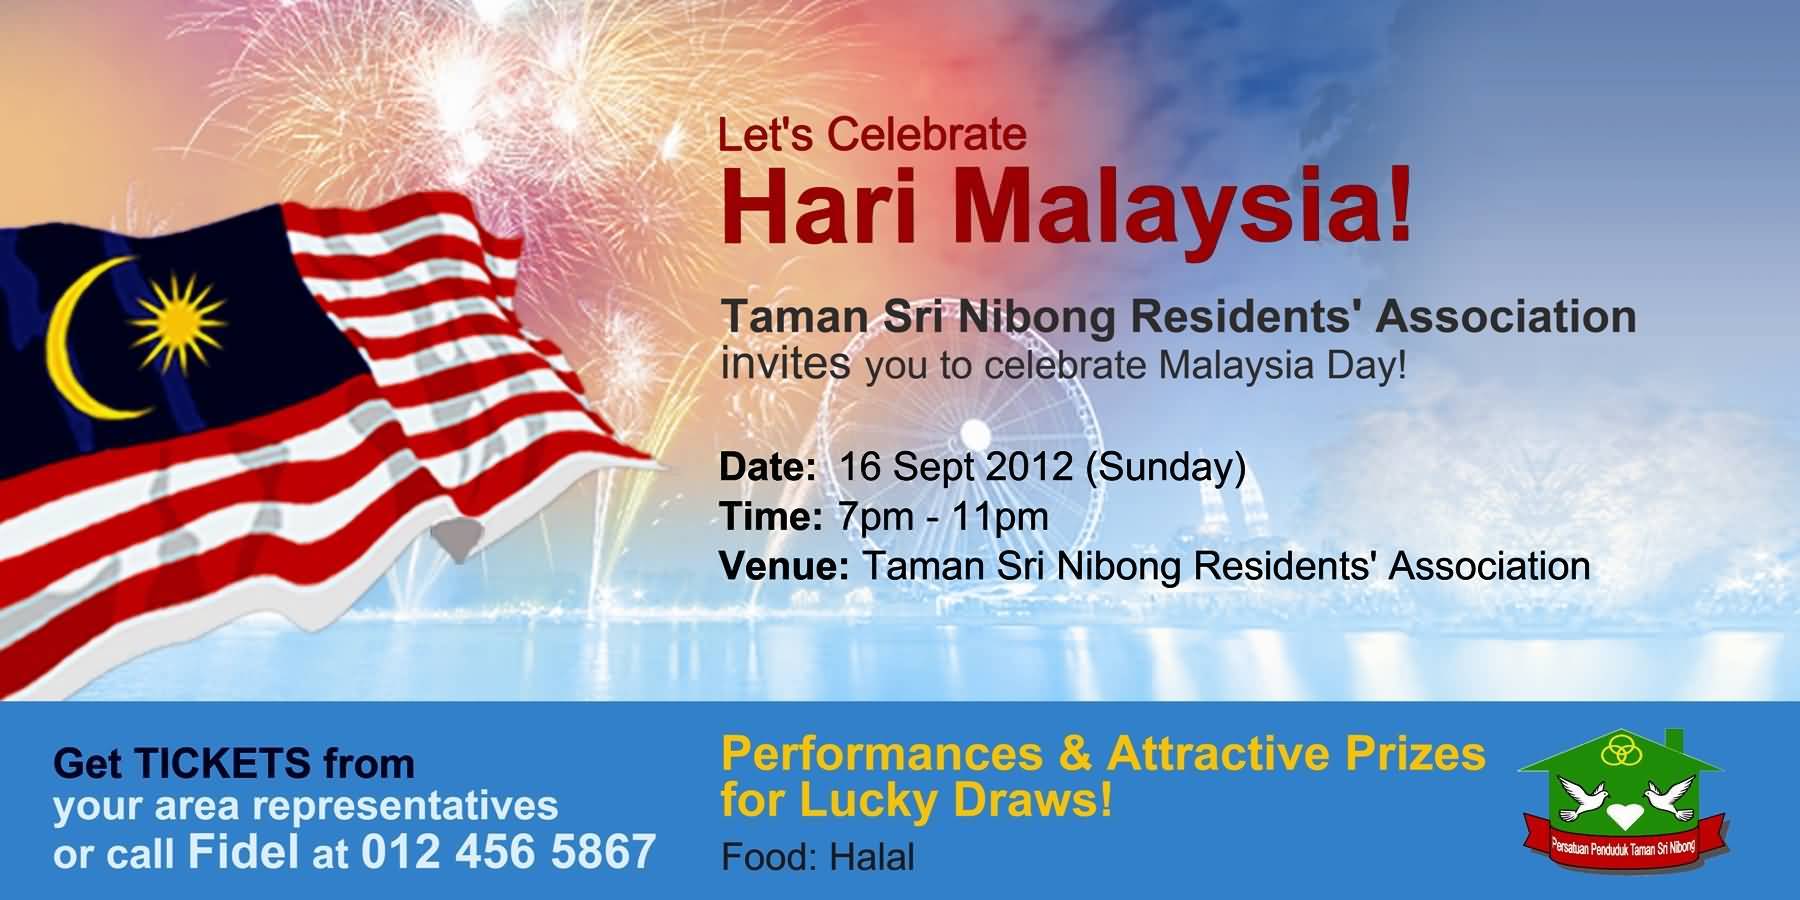 Let’s Celebrate Hari Malaysia